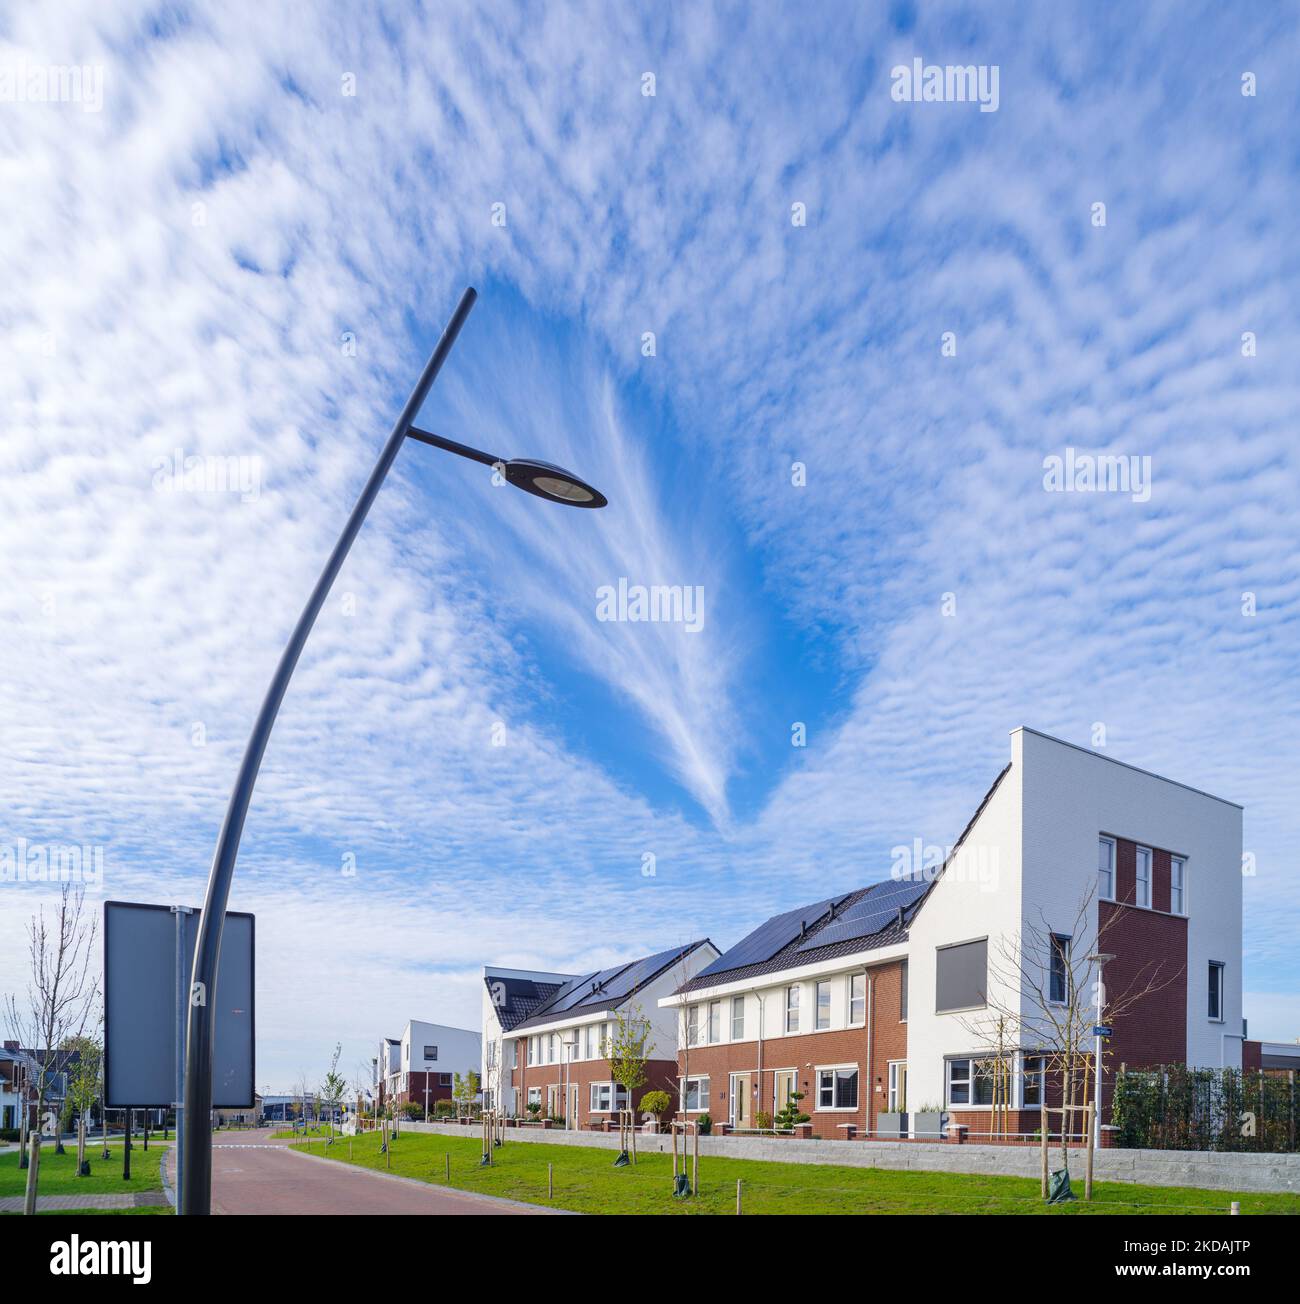 Zona residencial de nueva construcción en los Países Bajos con algunas hermosas nubes por encima Foto de stock